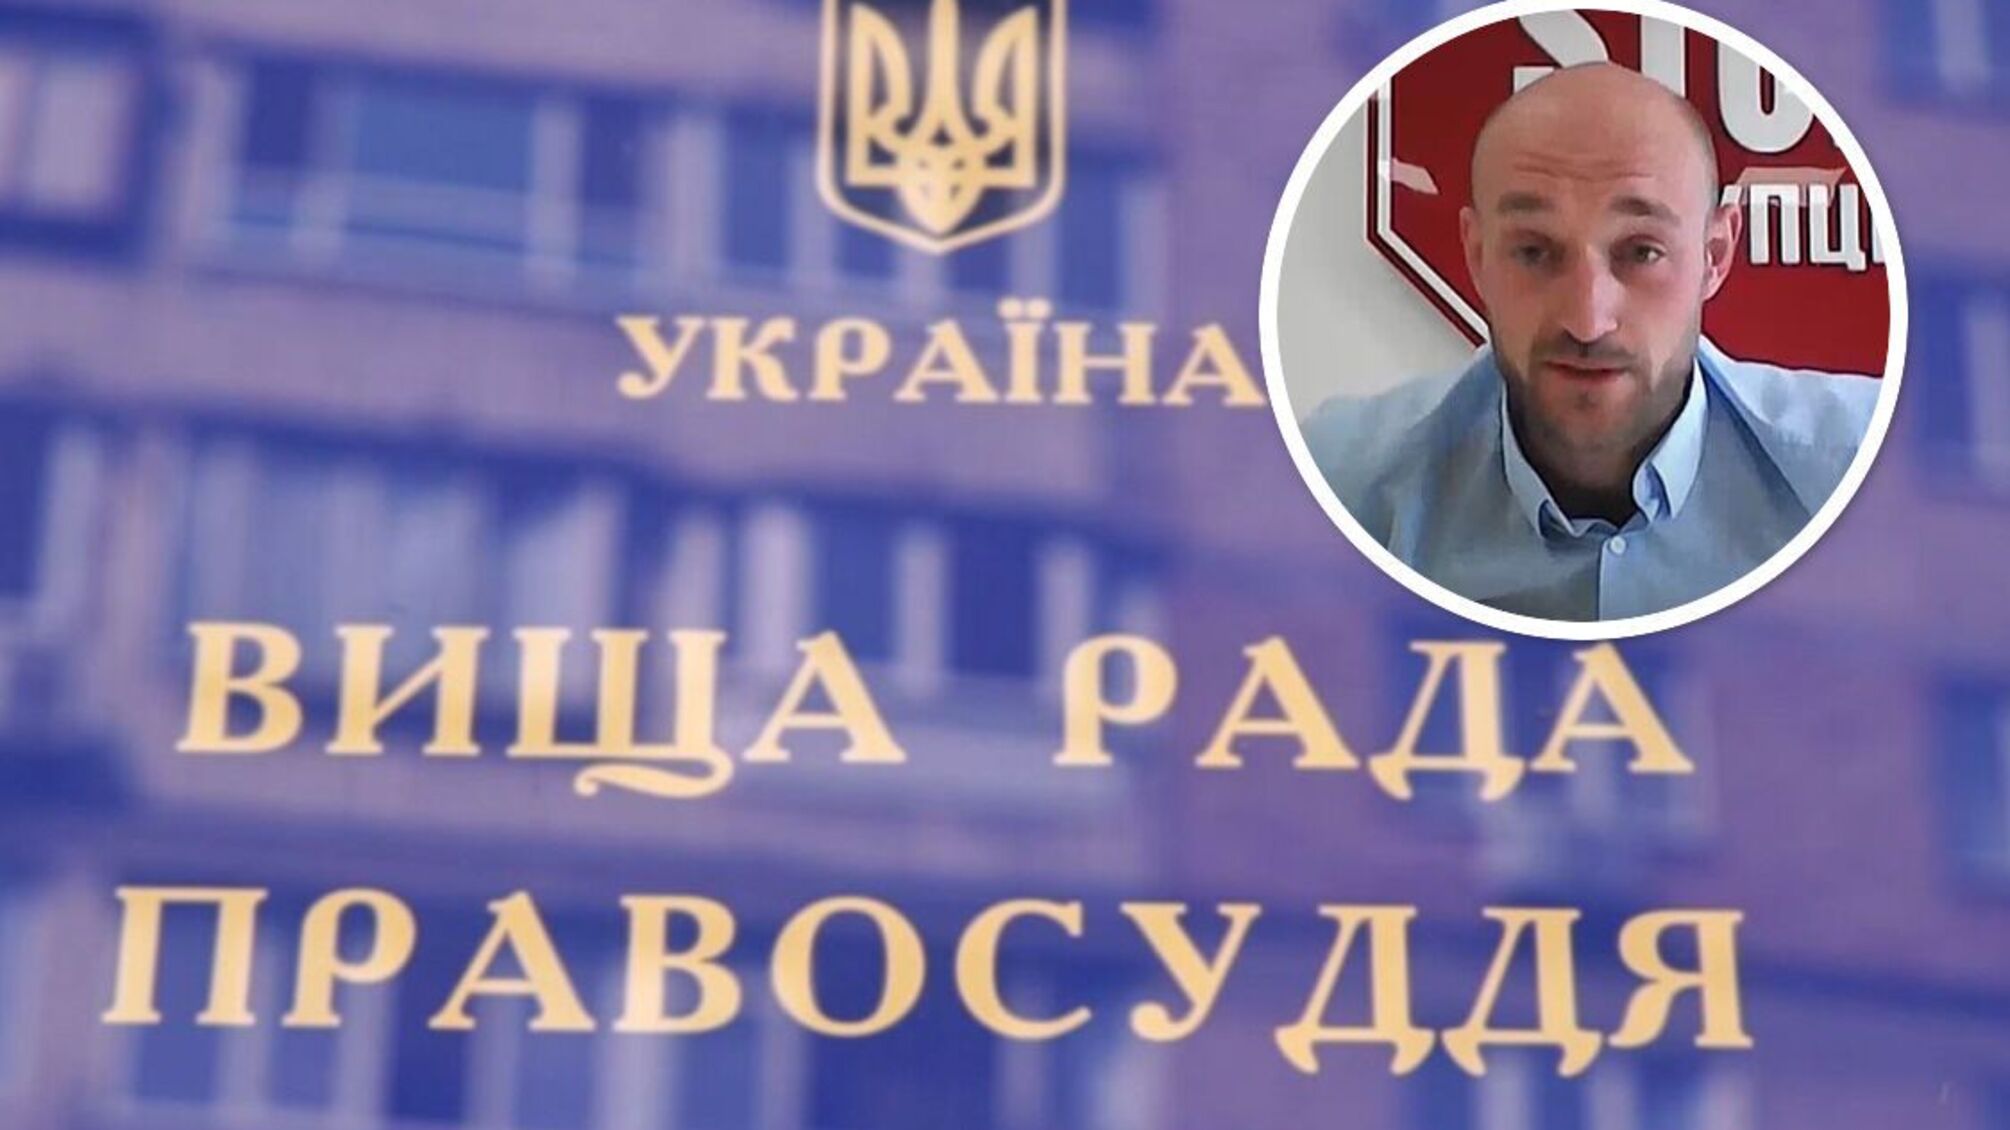 Суддя пітнів та хвилювався, дозволяючи арешт Князєва: Бондарчук про результат судової реформи